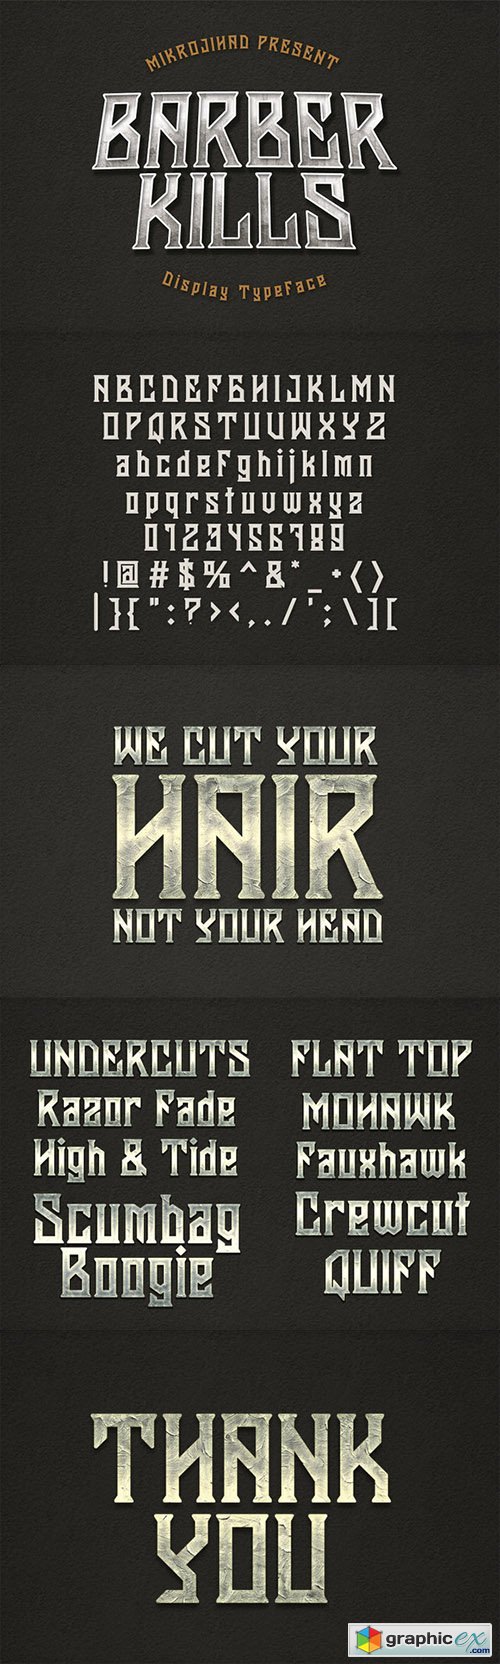 Barberkills Font